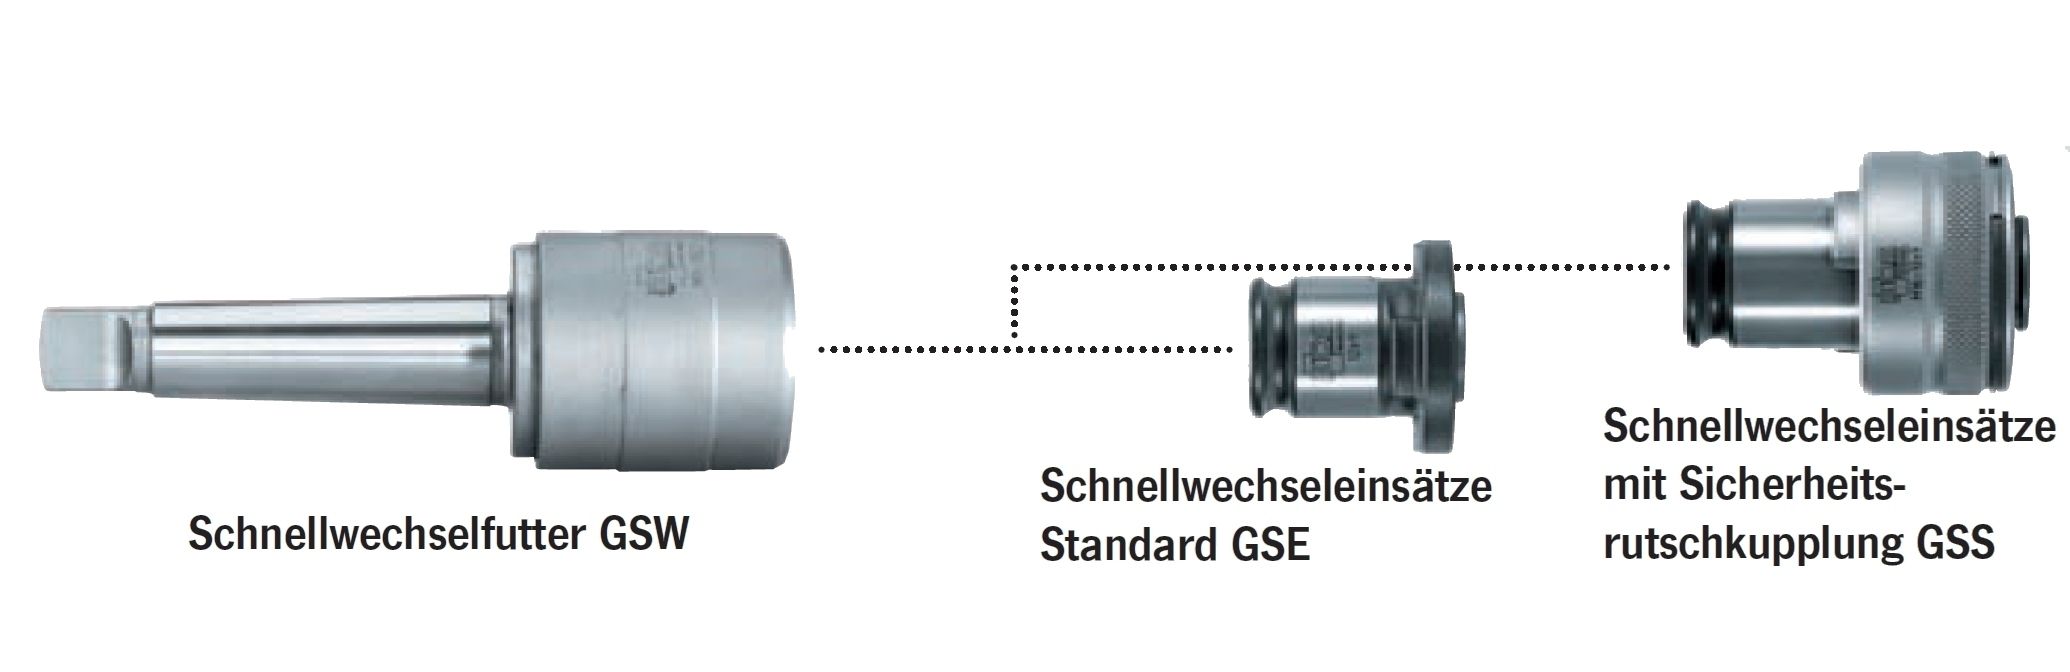 Gewinde-Schnellwechselfutter GSW 333 - MK3 | Größe 3